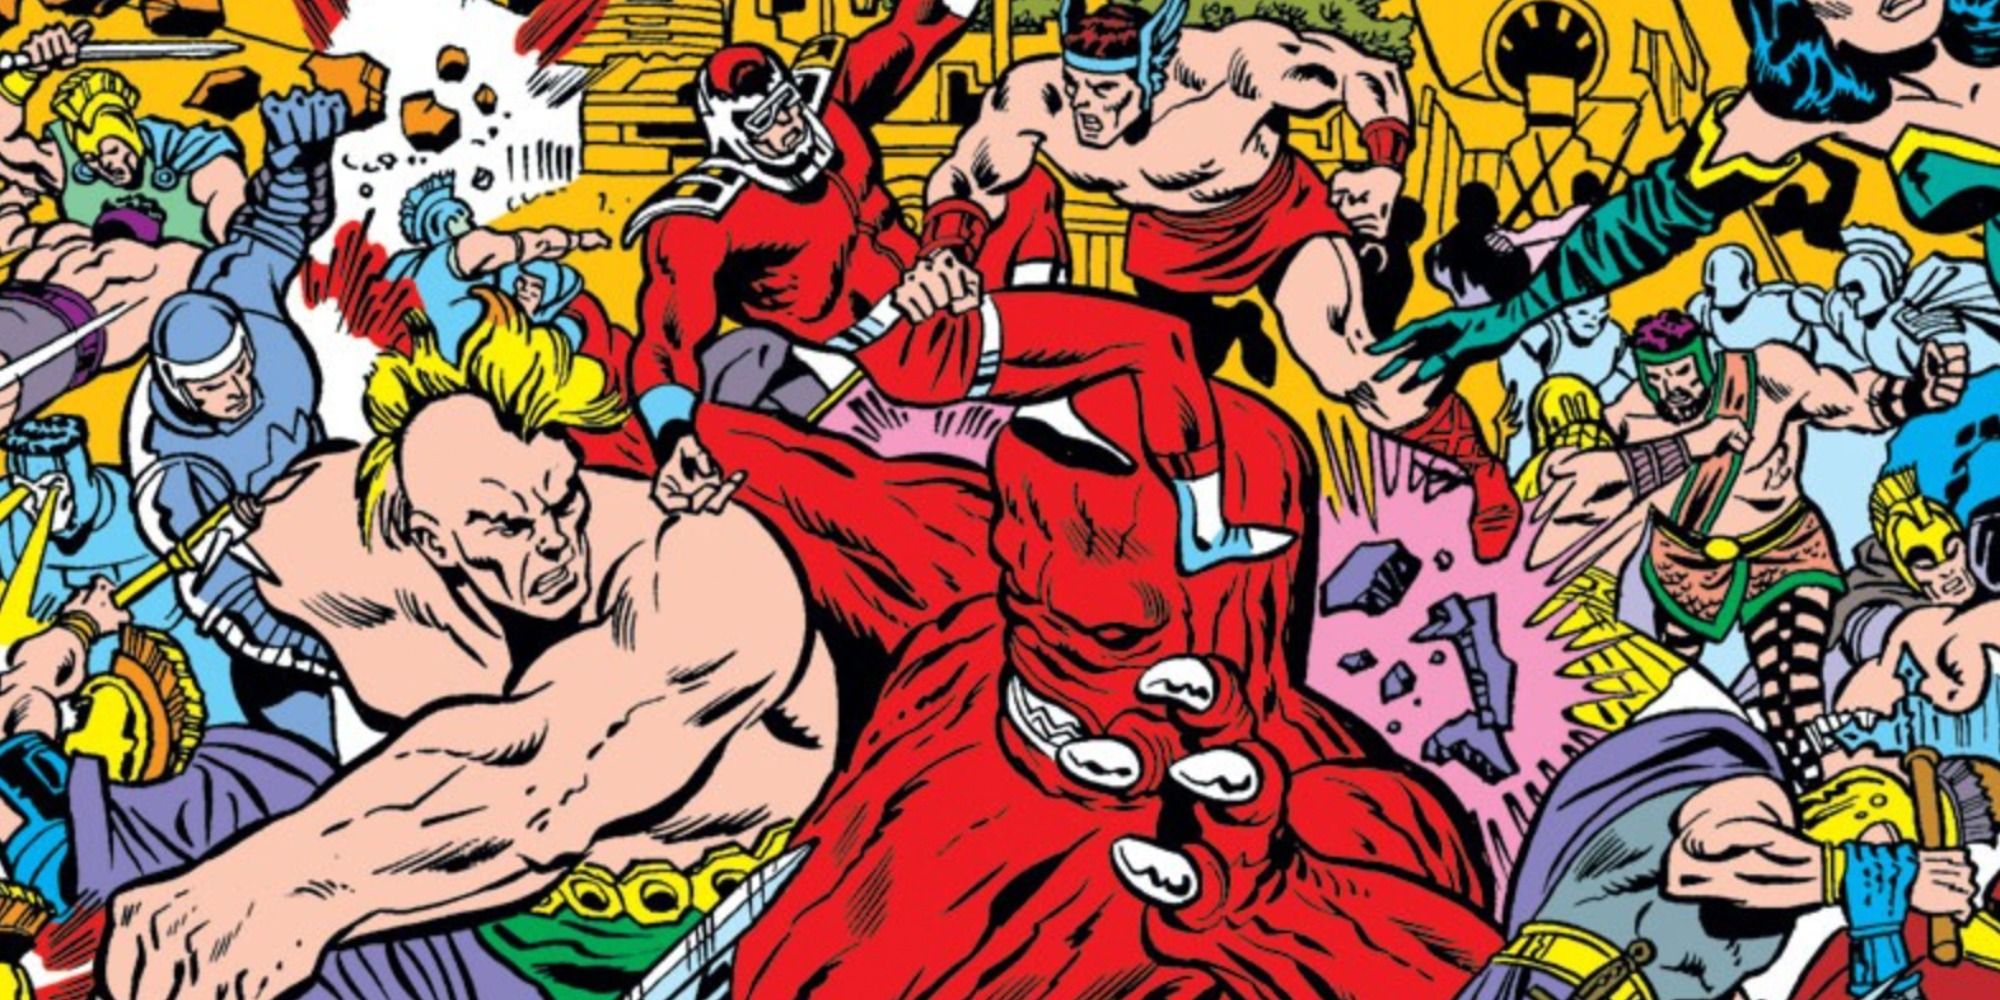 Hercules fights the Eternals in Marvel Comics.